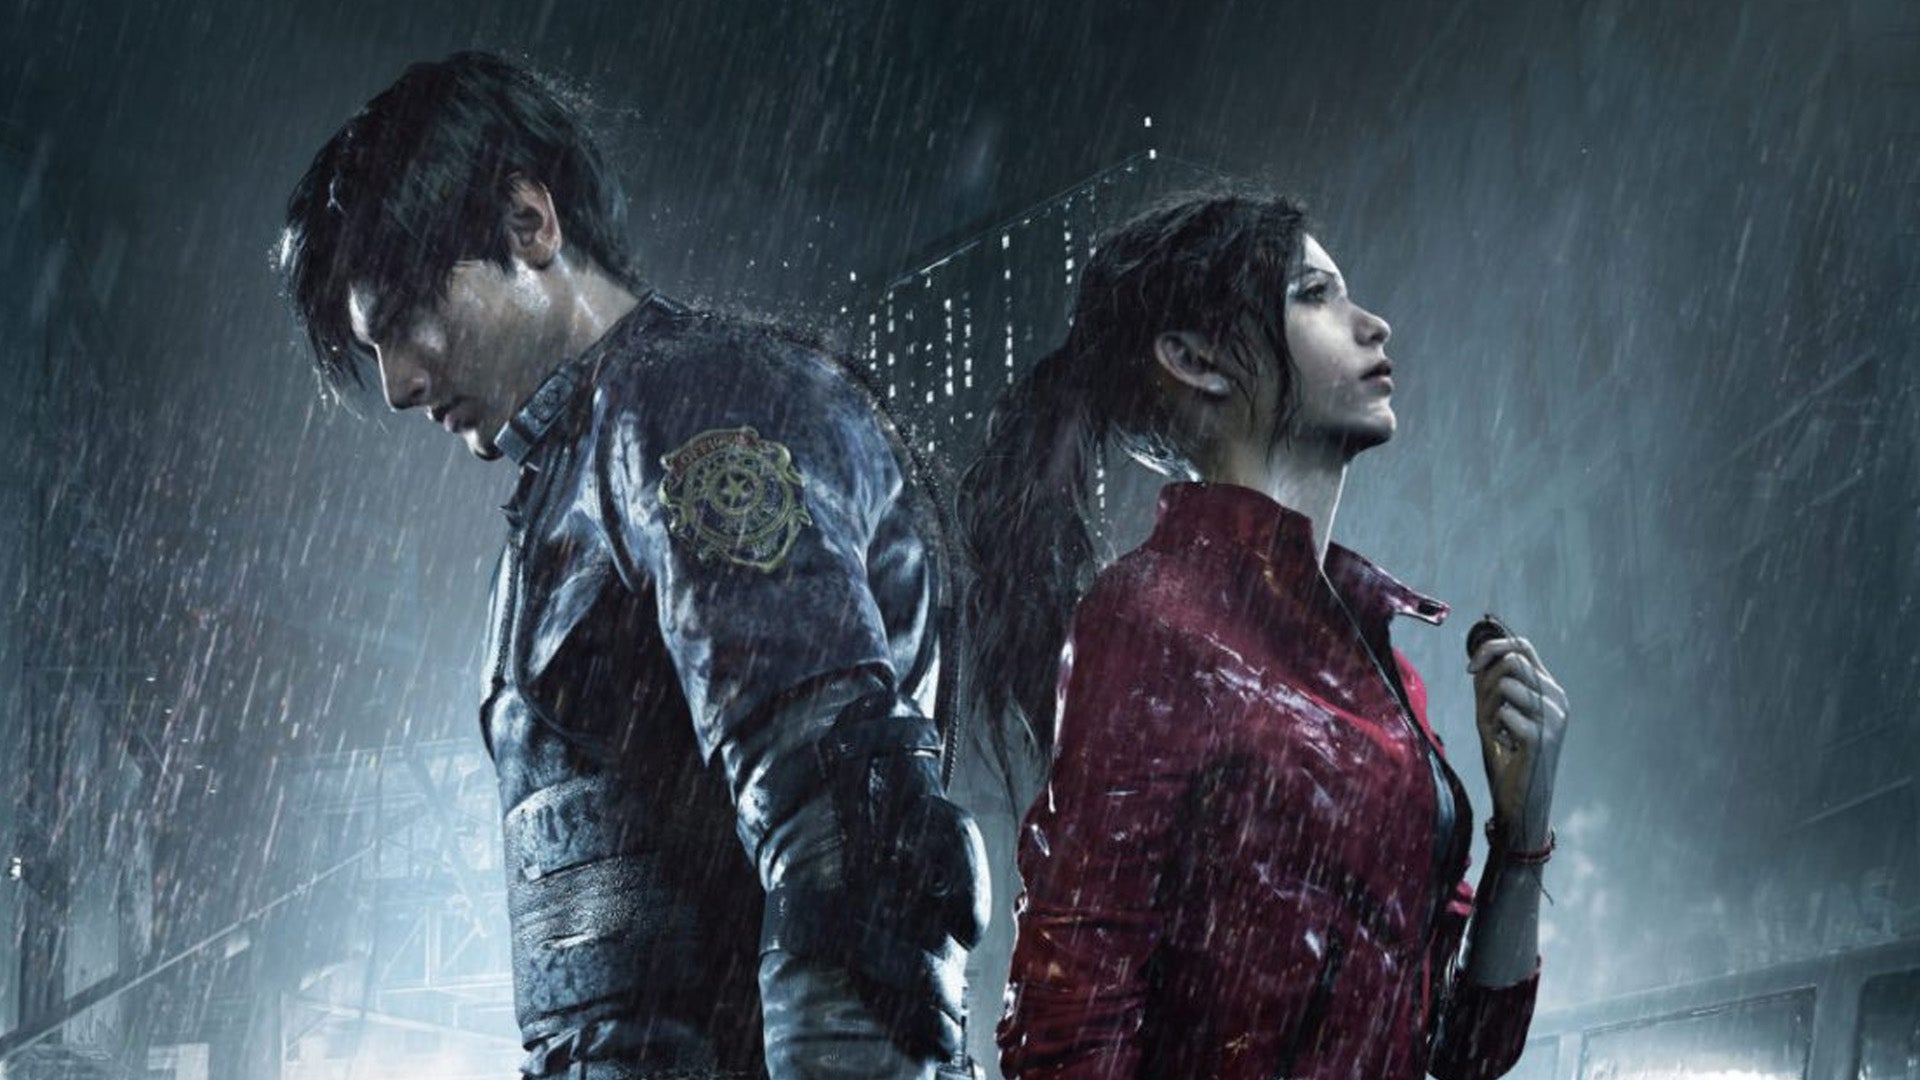 Obrazki dla Resident Evil 2, 3 i 7 z darmowymi wersjami next-genowymi. Ulepszenia dostępne do pobrania